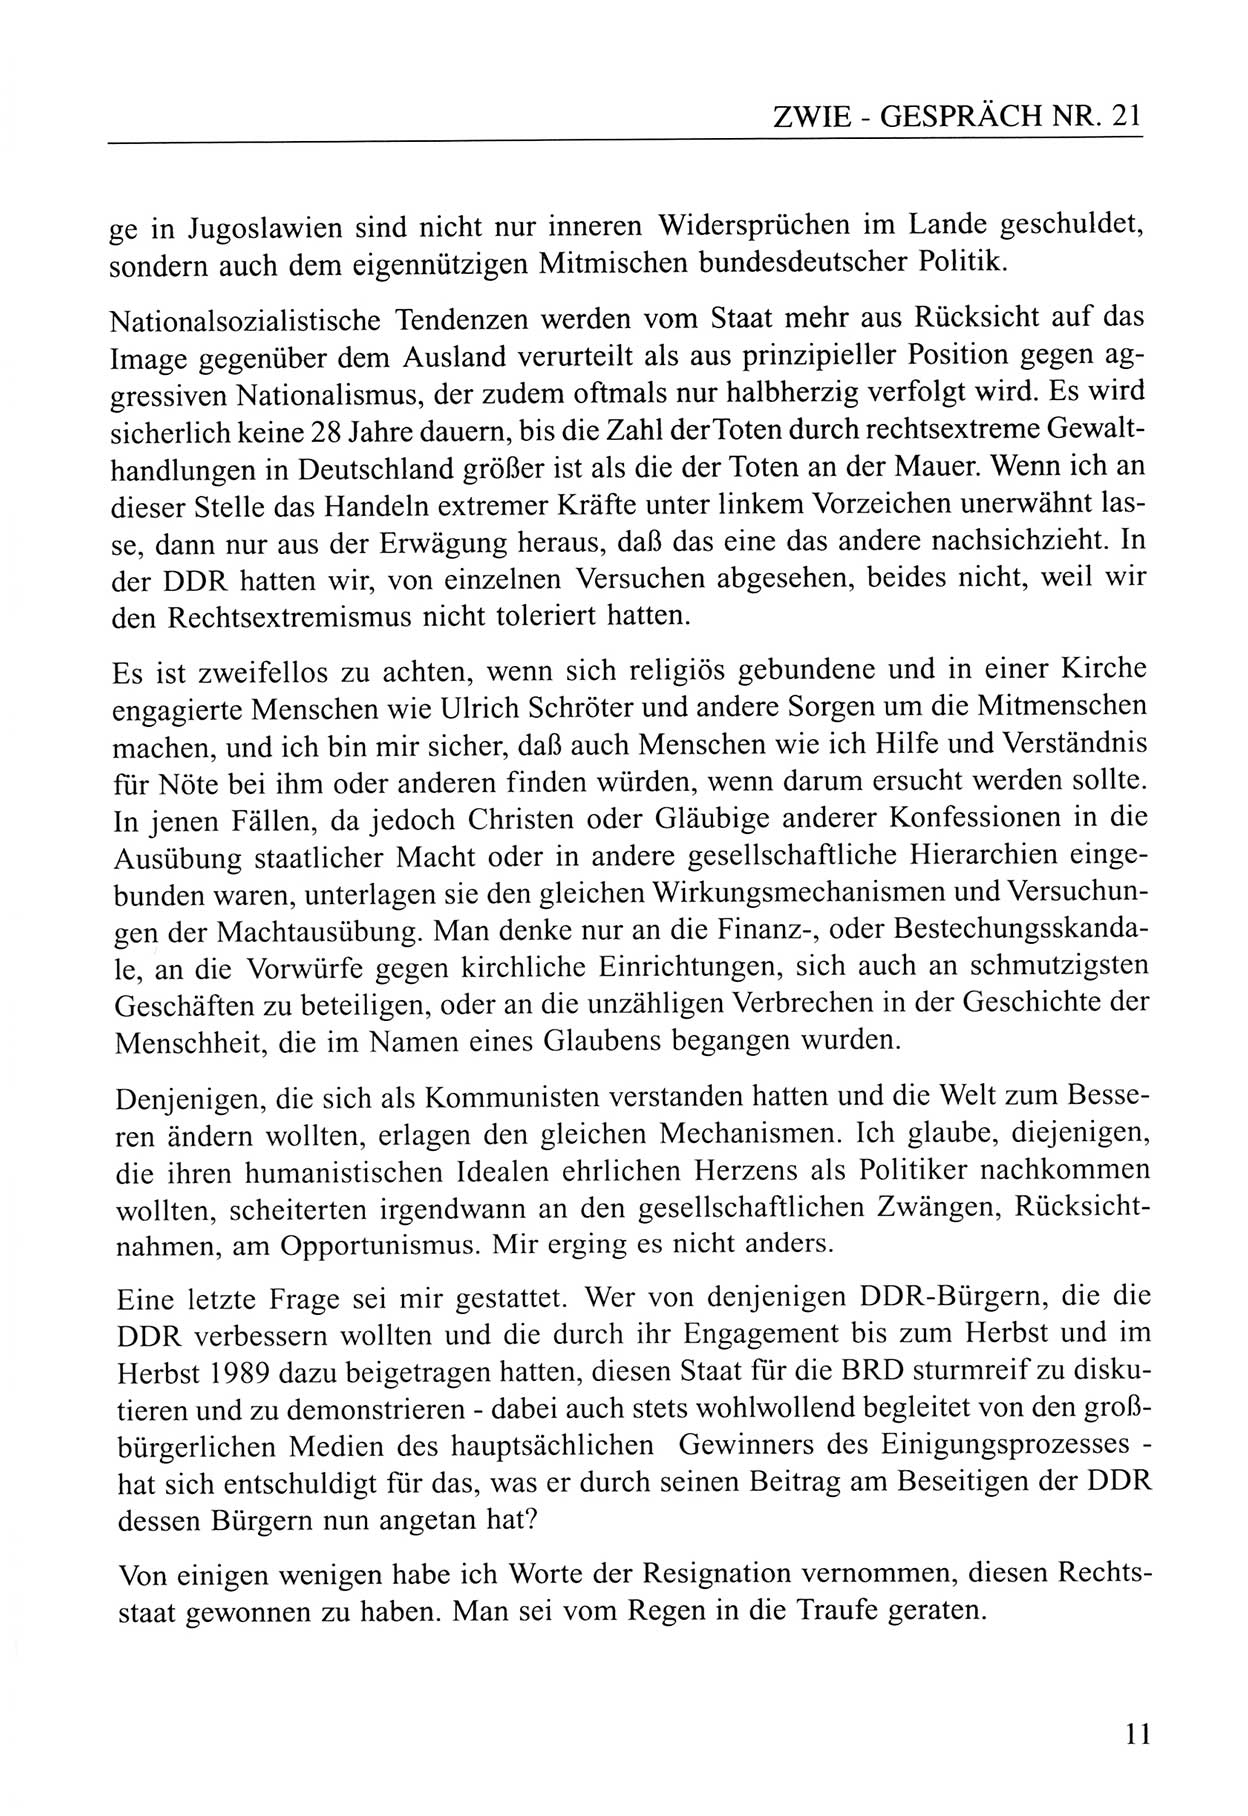 Zwie-Gespräch, Beiträge zum Umgang mit der Staatssicherheits-Vergangenheit [Deutsche Demokratische Republik (DDR)], Ausgabe Nr. 21, Berlin 1994, Seite 11 (Zwie-Gespr. Ausg. 21 1994, S. 11)